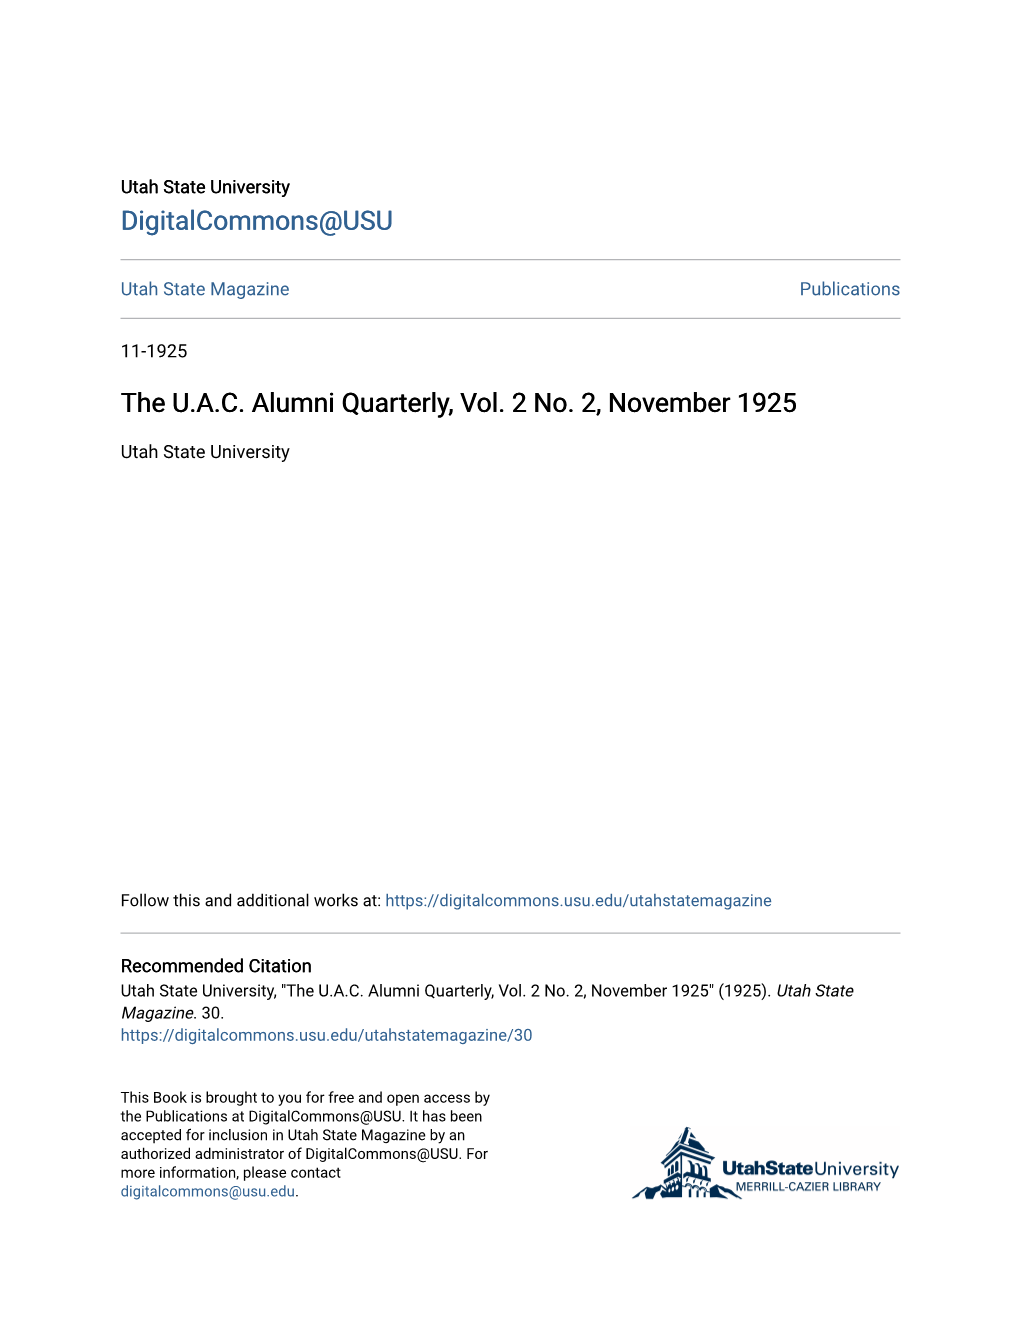 The U.A.C. Alumni Quarterly, Vol. 2 No. 2, November 1925